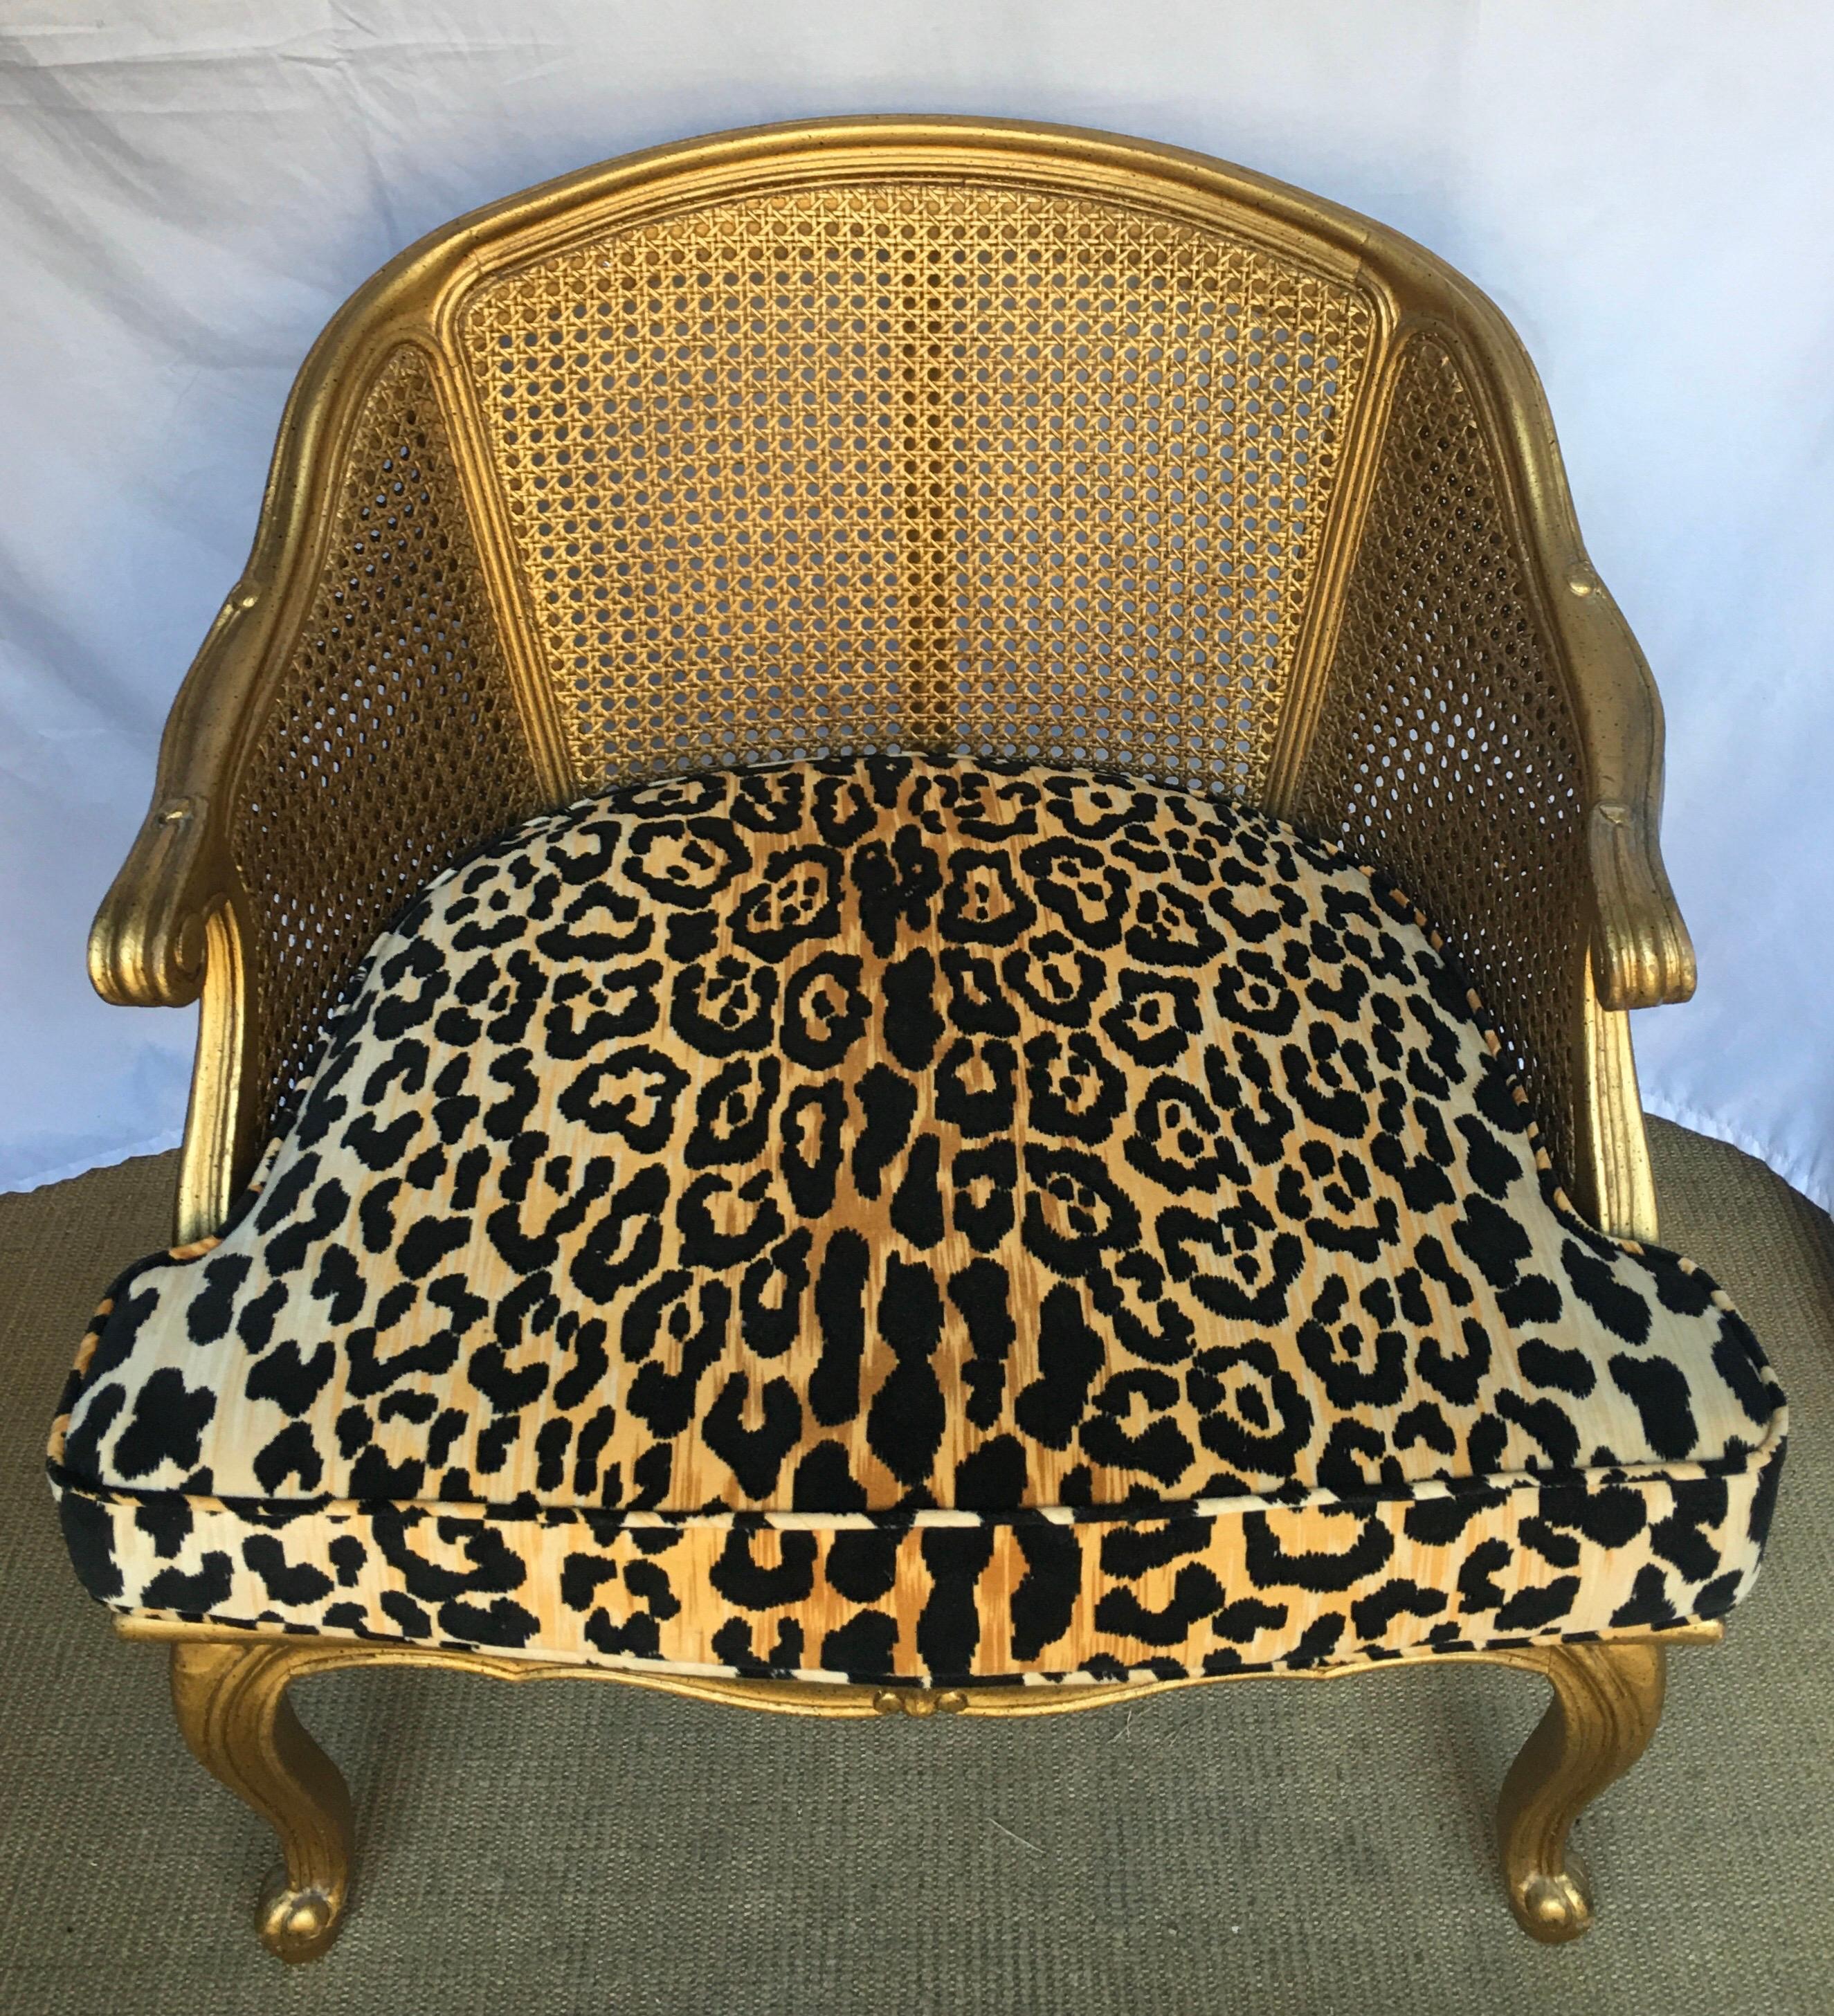 20th Century Hollywood Regency Style Woven Gilt Cane Armchair with Animal Print, Spain